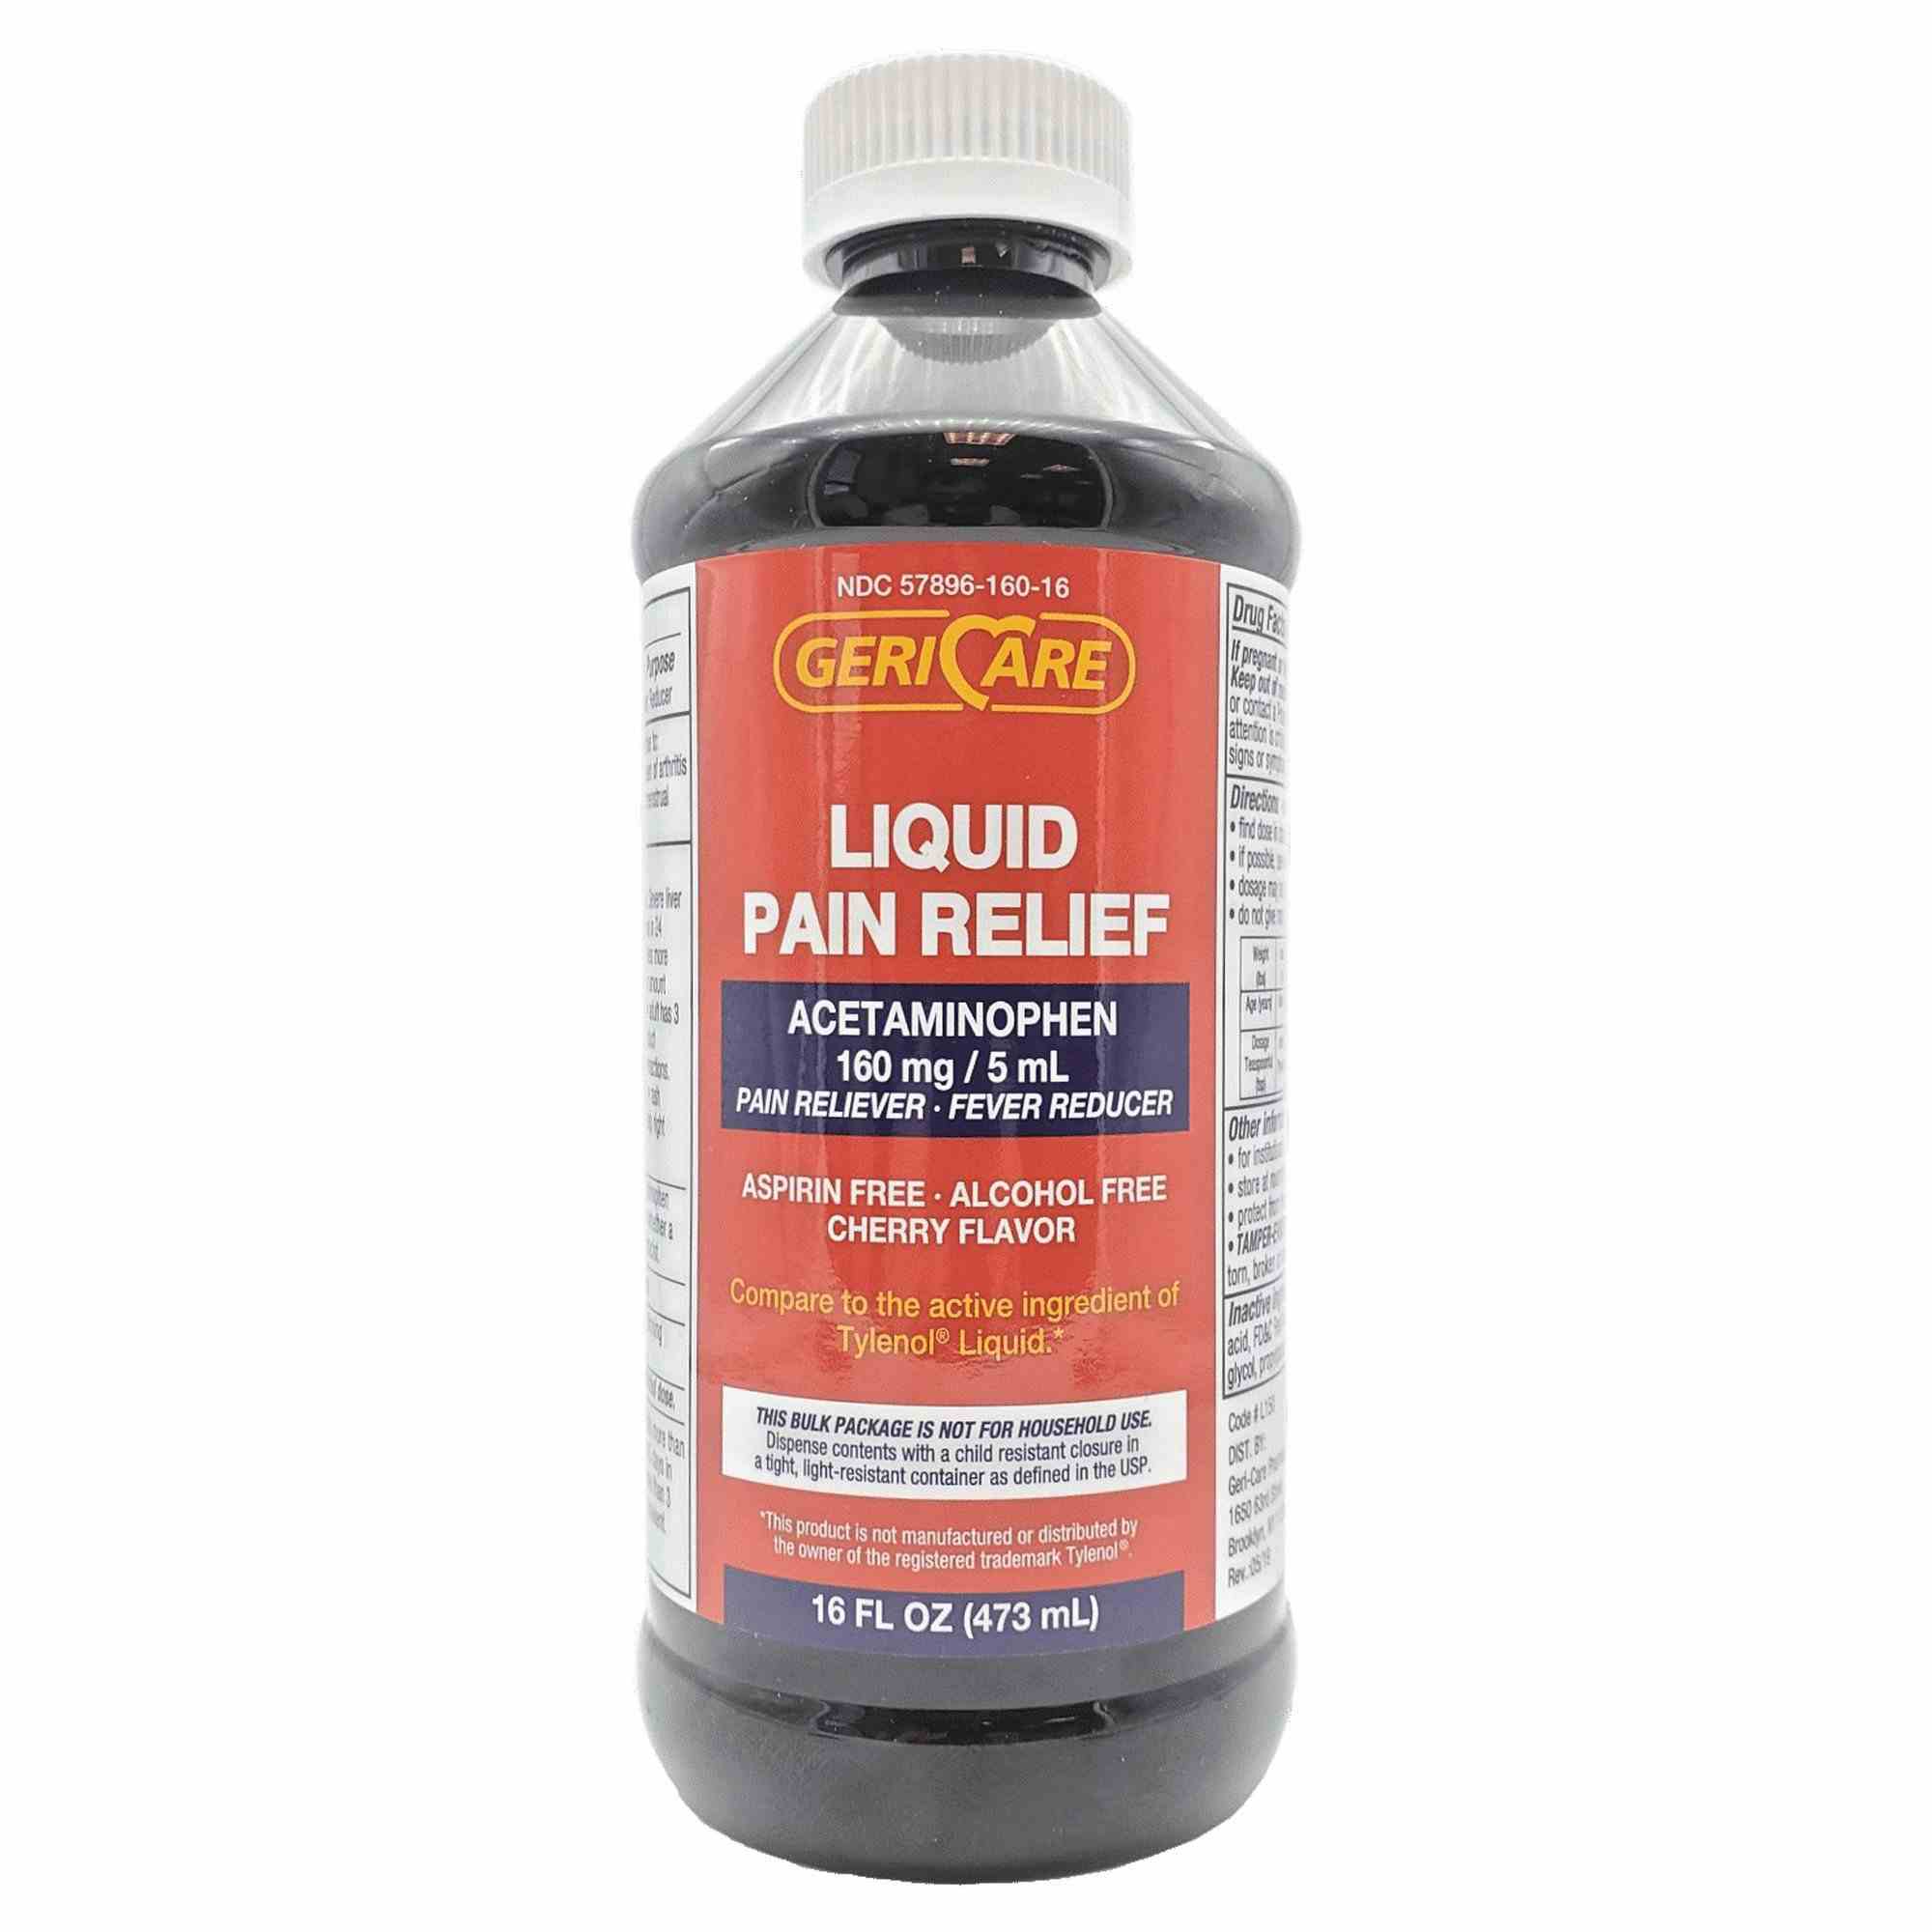 Geri-Care Acetaminophen Liquid Pain Relief, 160 mg/5 ml, Cherry, Q101-16-GCP, 1 Bottle